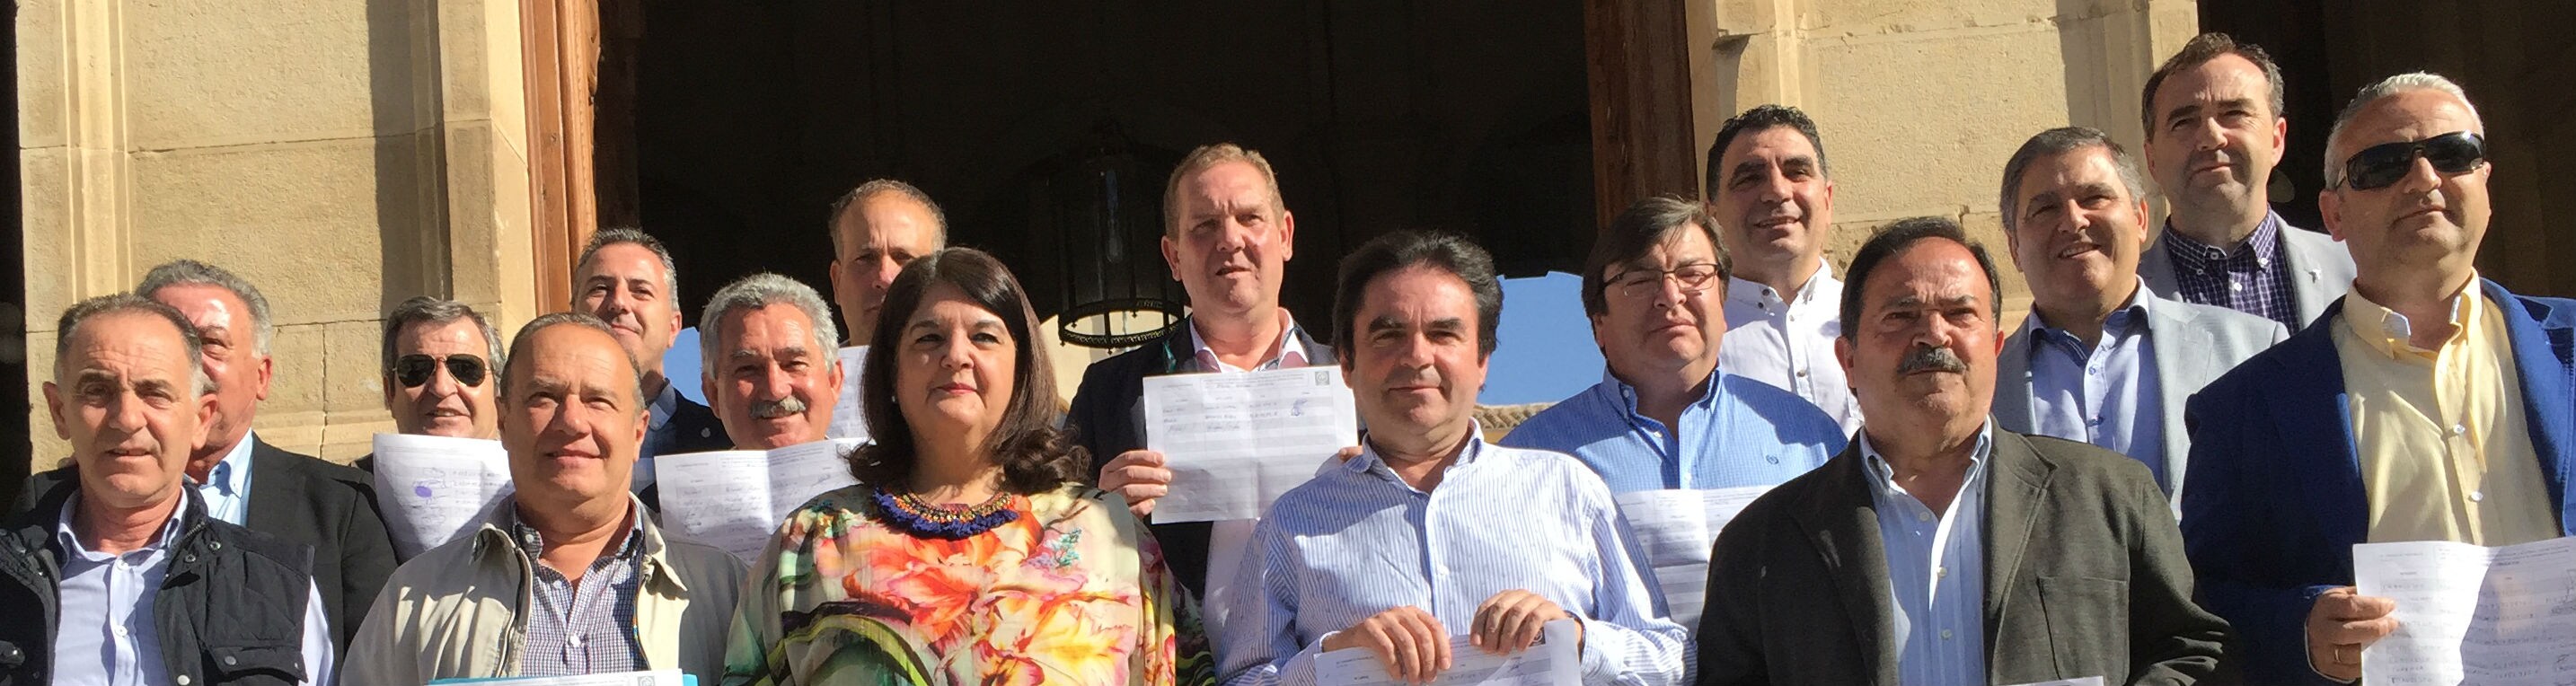 Alcaldes populares del sector crítico en un acto en apoyo de Miguel Moreno.